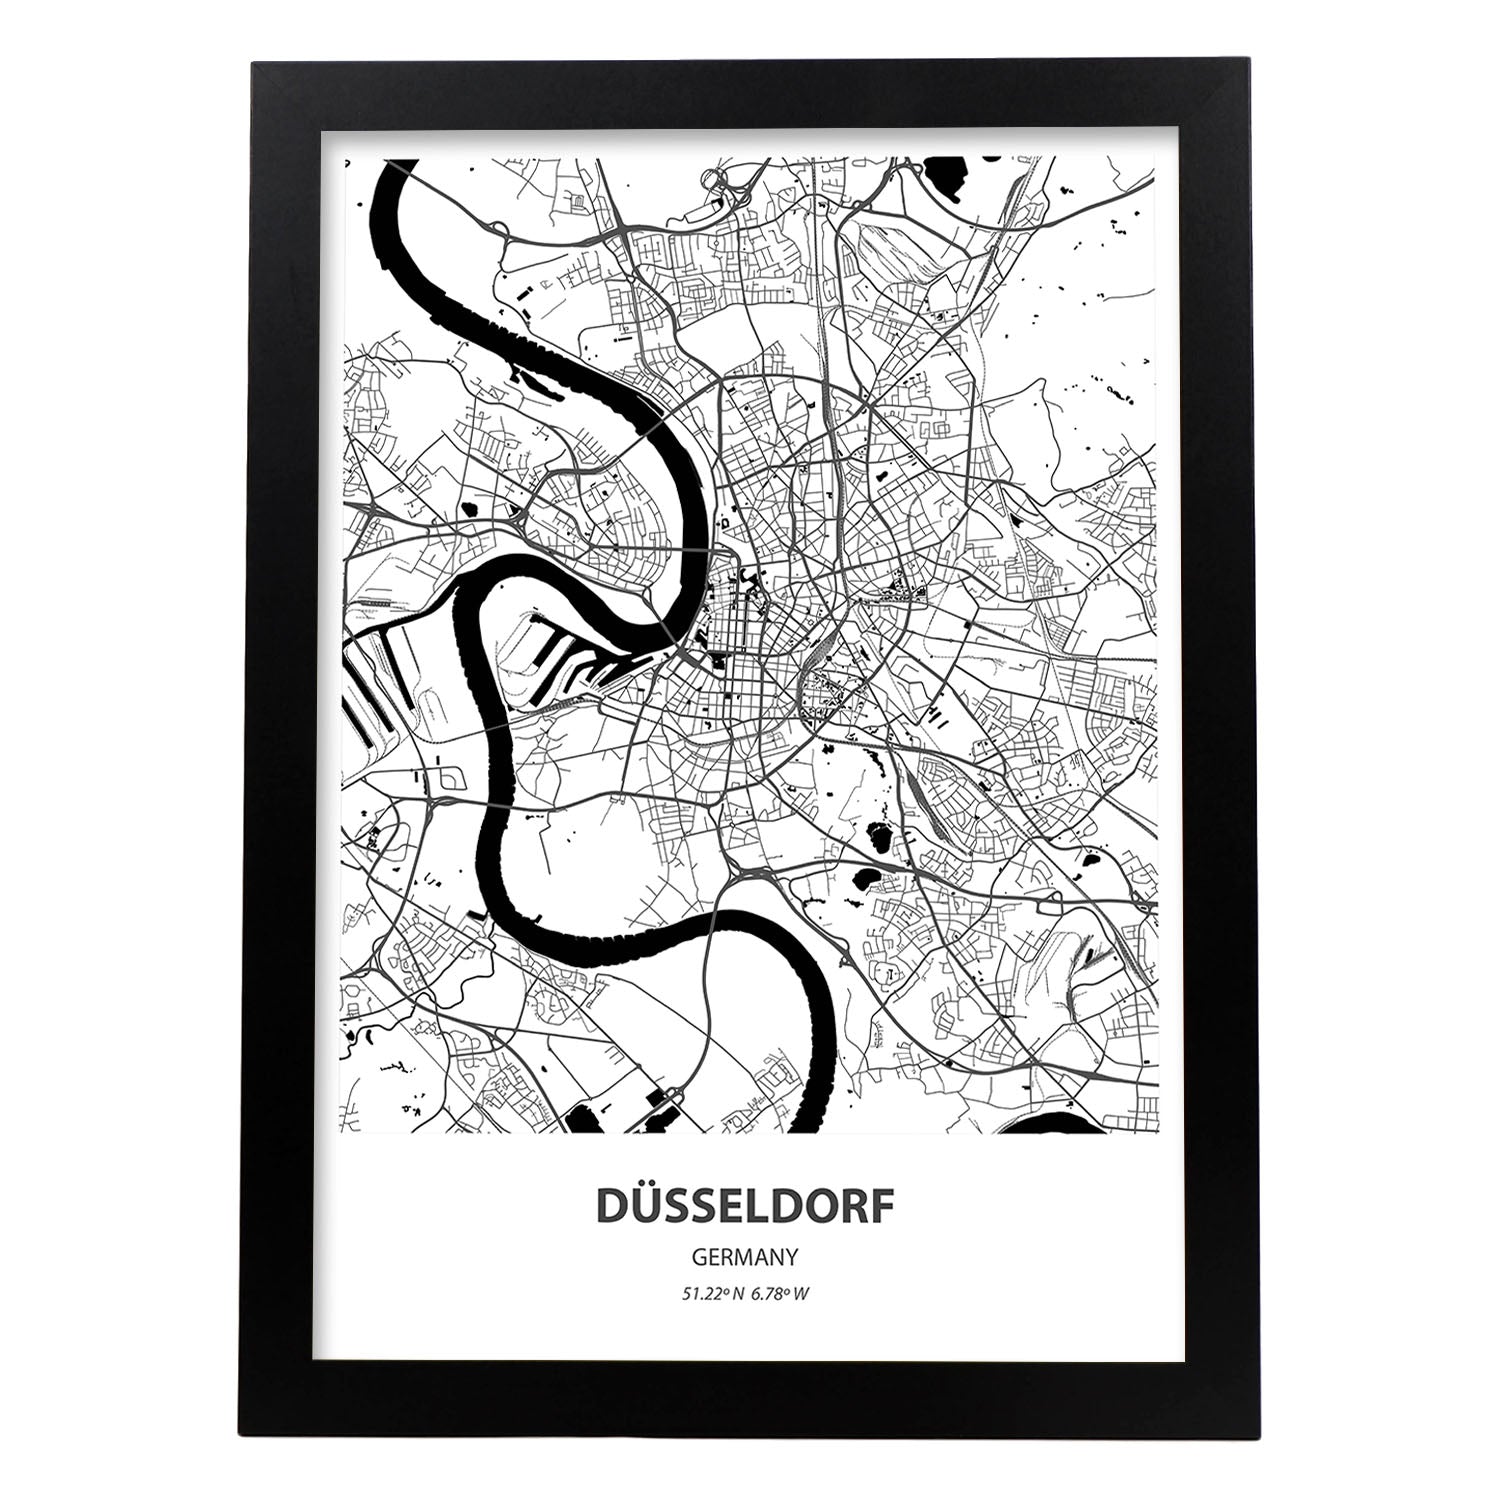 Poster con mapa de Dusseldorf - Alemania. Láminas de ciudades de Alemania con mares y ríos en color negro.-Artwork-Nacnic-A3-Marco Negro-Nacnic Estudio SL